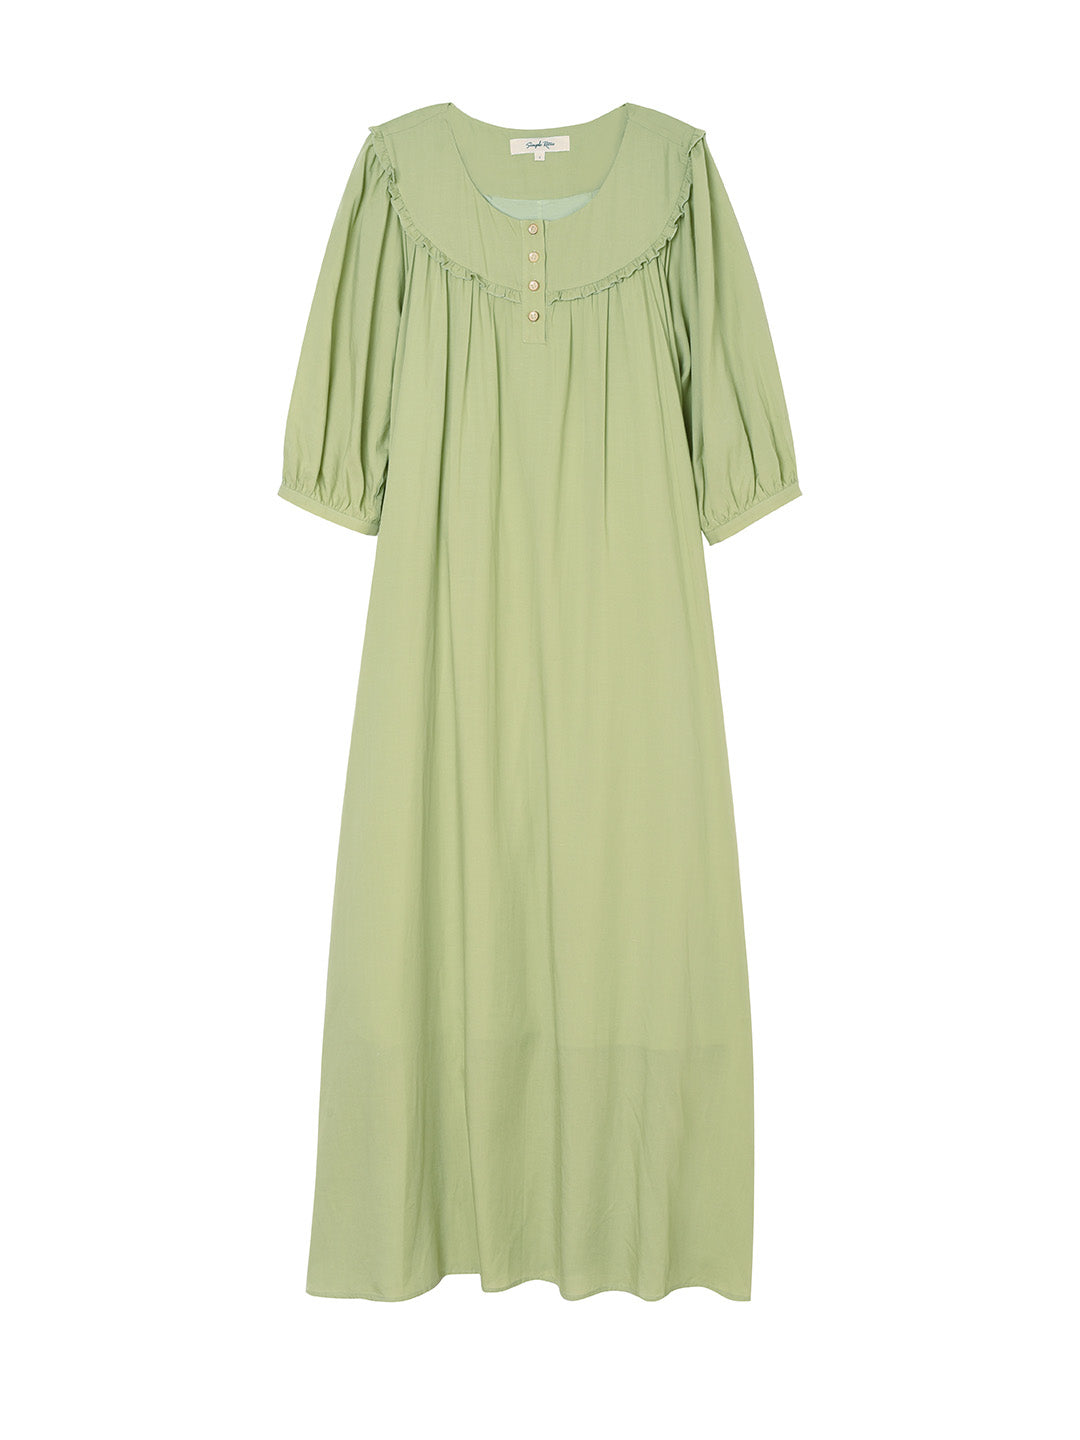 Katie Round Neck Mid-sleeve Green Dress